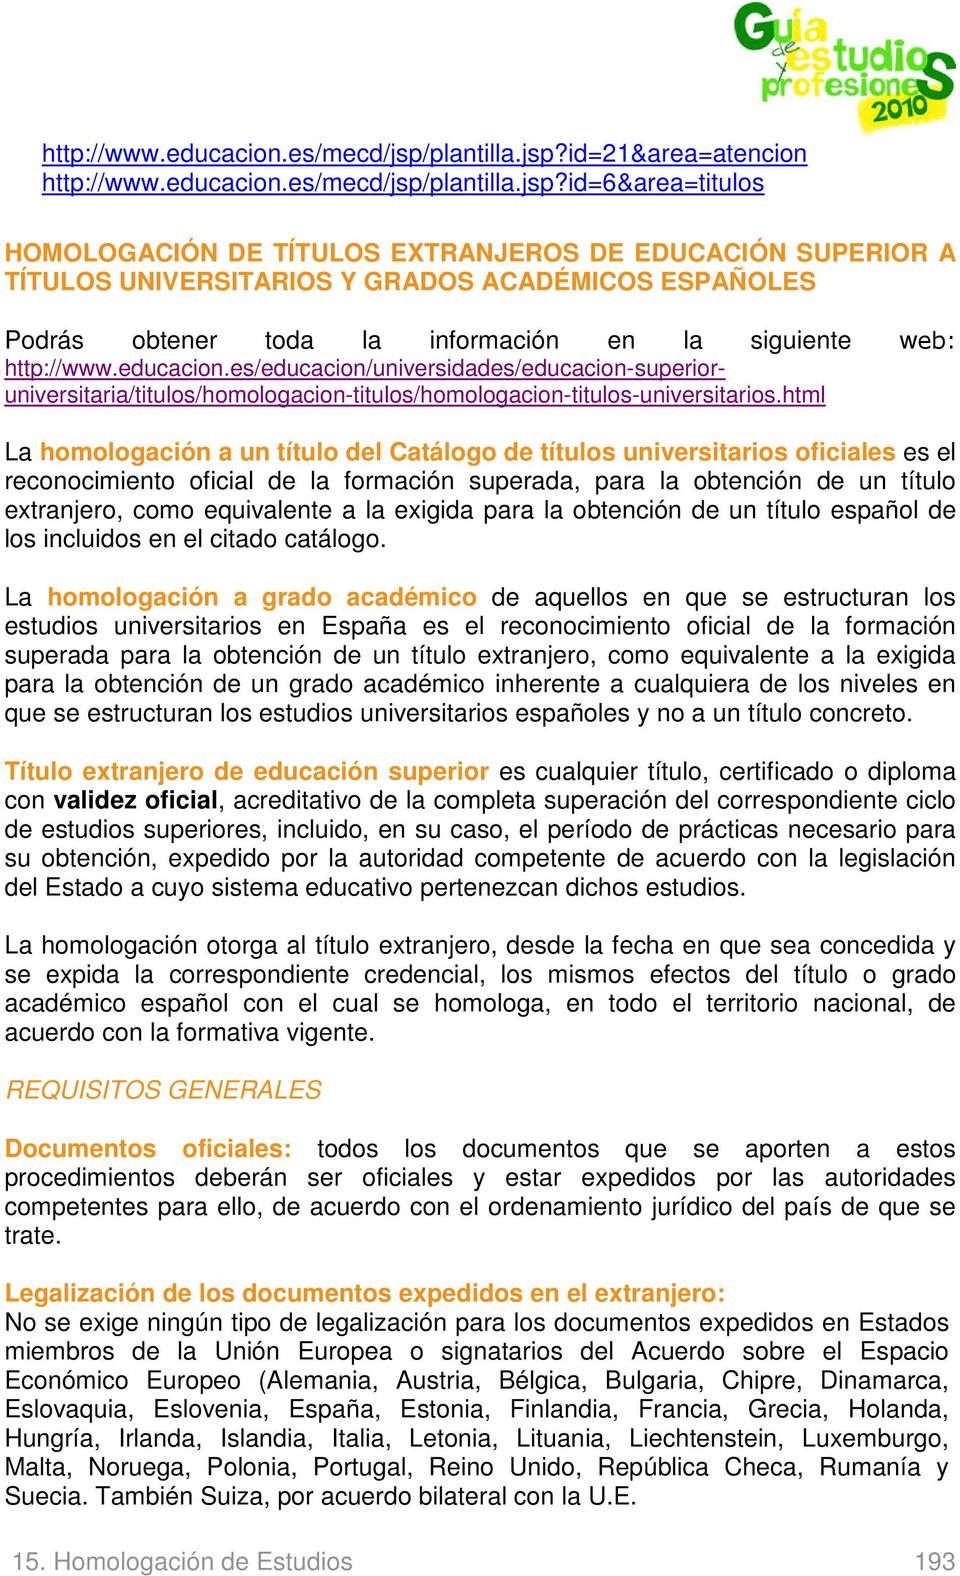 id=21&area=atencion id=6&area=titulos HOMOLOGACIÓN DE TÍTULOS EXTRANJEROS DE EDUCACIÓN SUPERIOR A TÍTULOS UNIVERSITARIOS Y GRADOS ACADÉMICOS ESPAÑOLES Podrás obtener toda la información en la